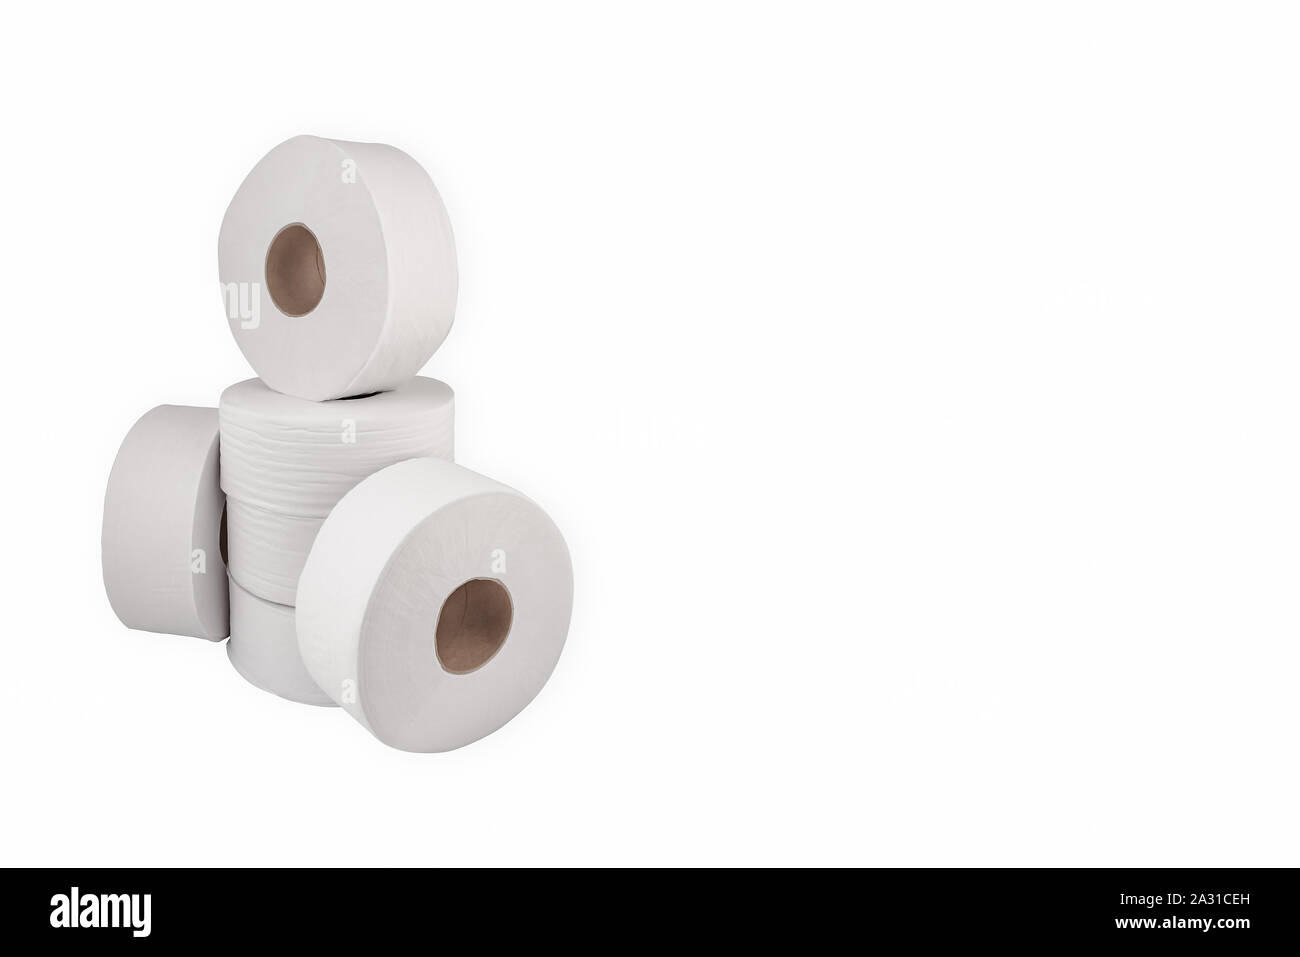 Jumbo Toilettenpapier 9 Zoll rollen für Spender weiß große runde Weiche ply entpackt Stockfoto